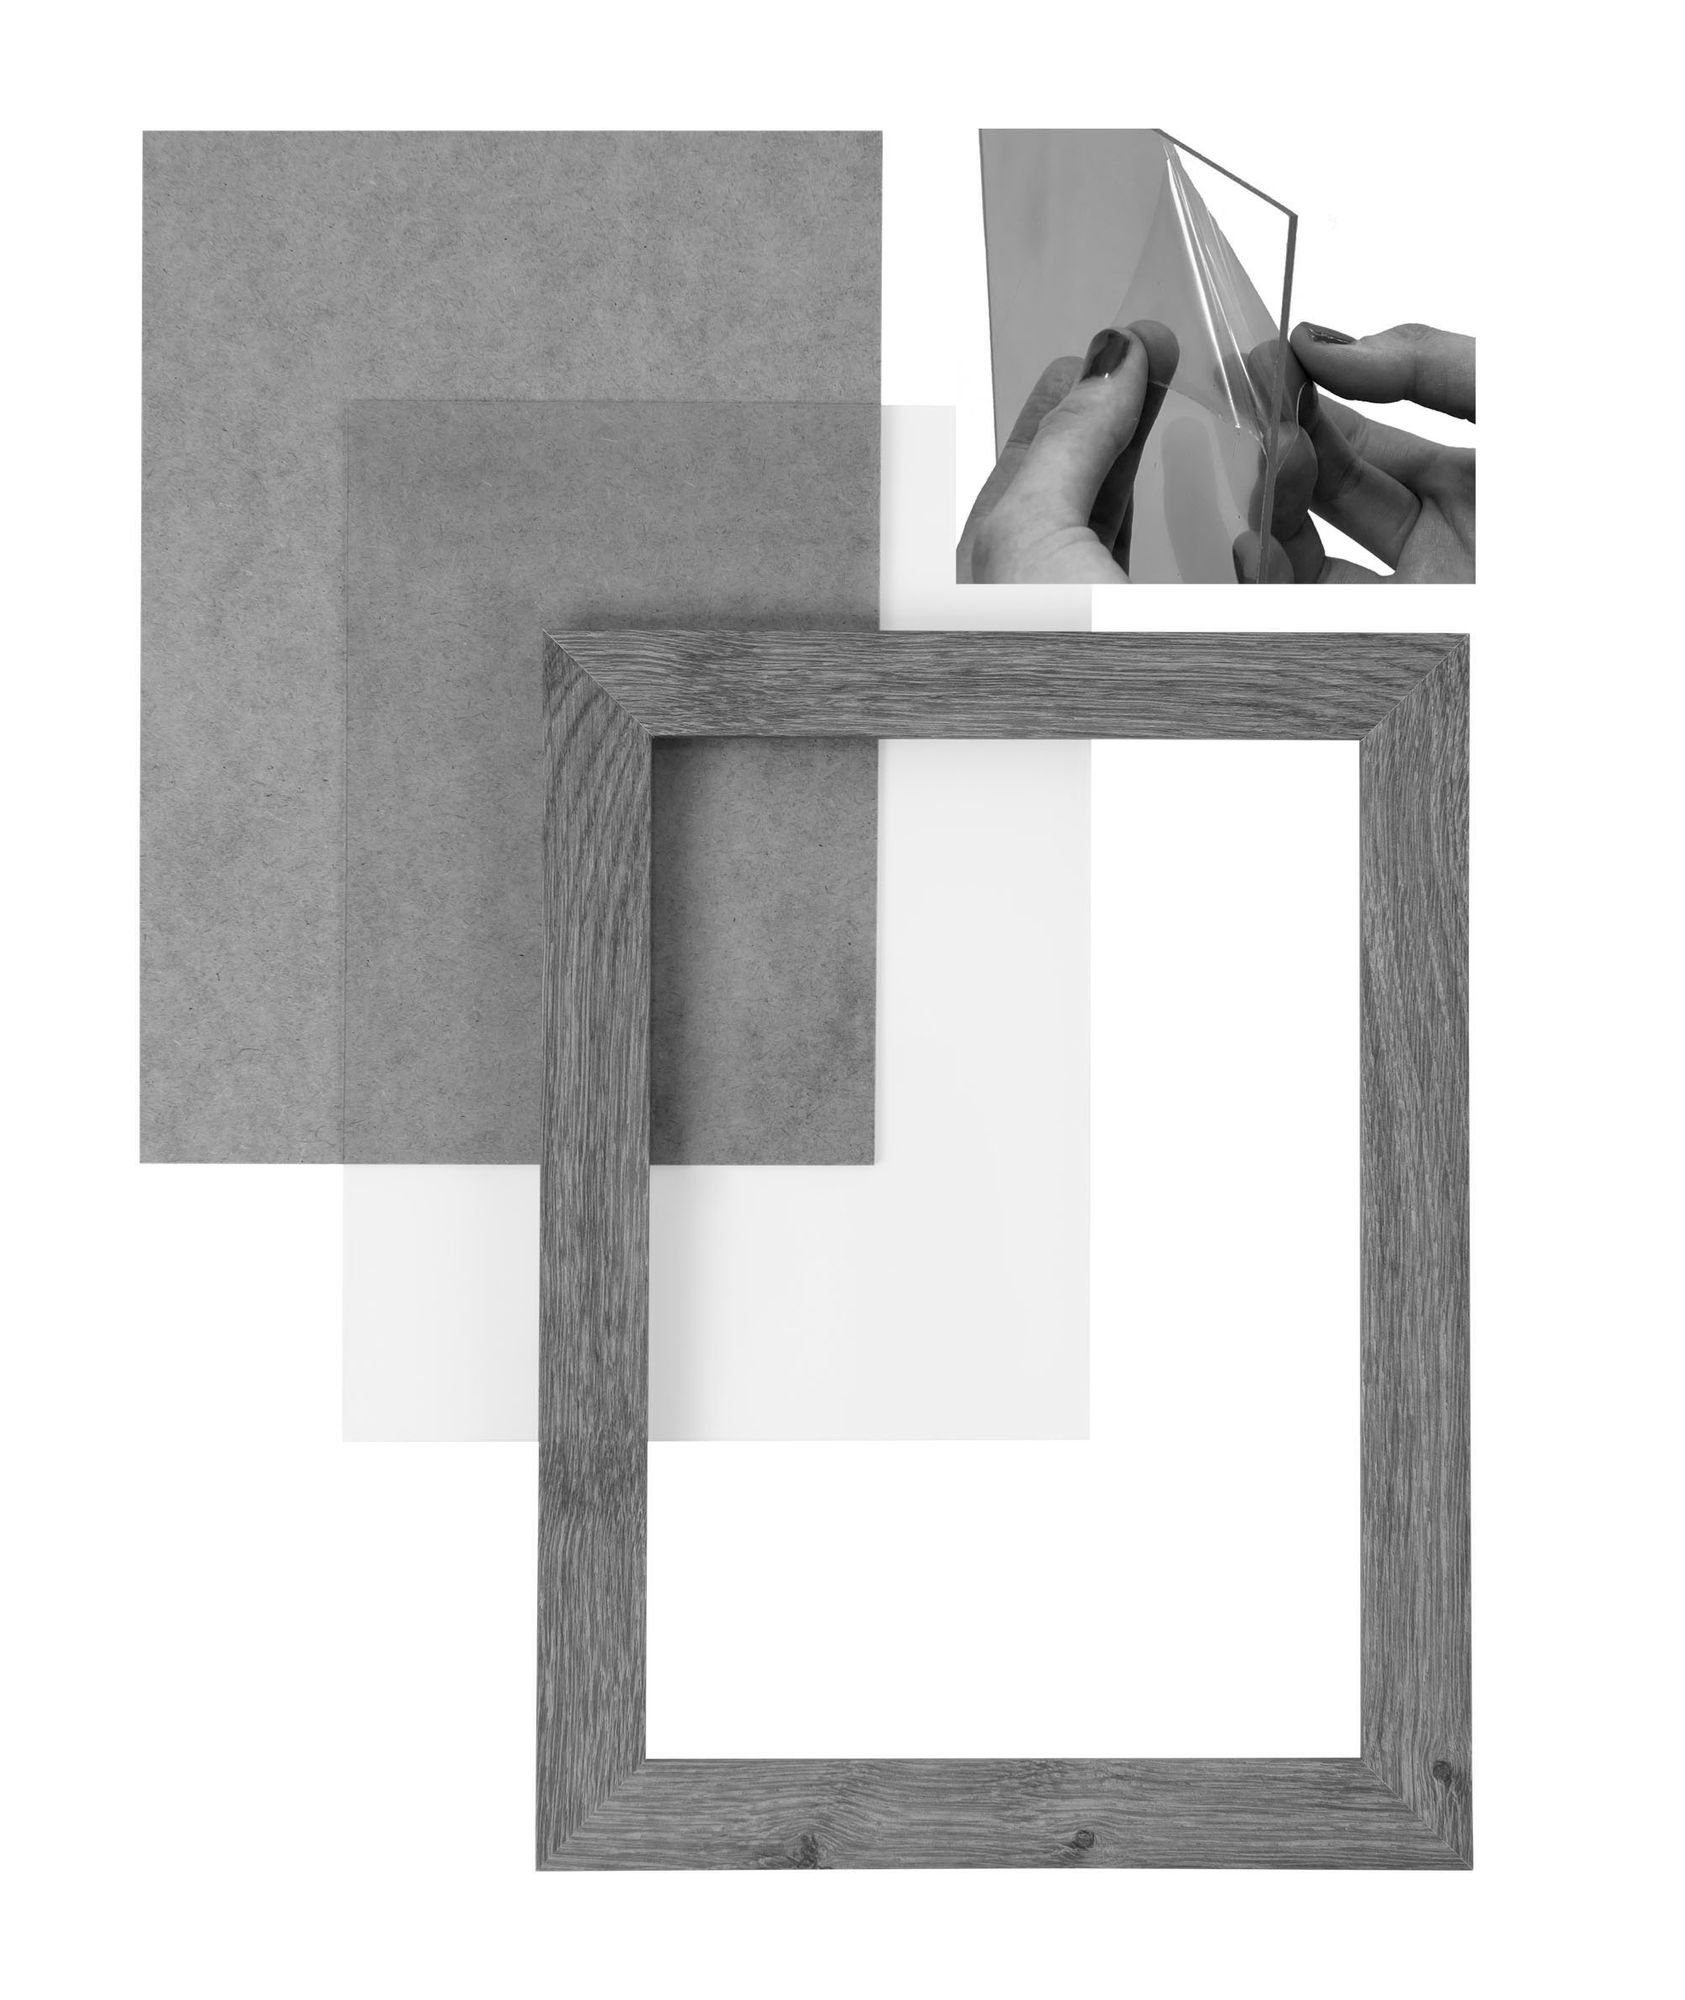 in Acrylglas, Holz FSC® und 'Collage' nach Rückwand inkl. Clamaro CLAMARO Bilderrahmen Maß 48x136 handgefertigt eckiger Bilderrahmen matt Moderner weiss Rahmen MDF Aufhänger